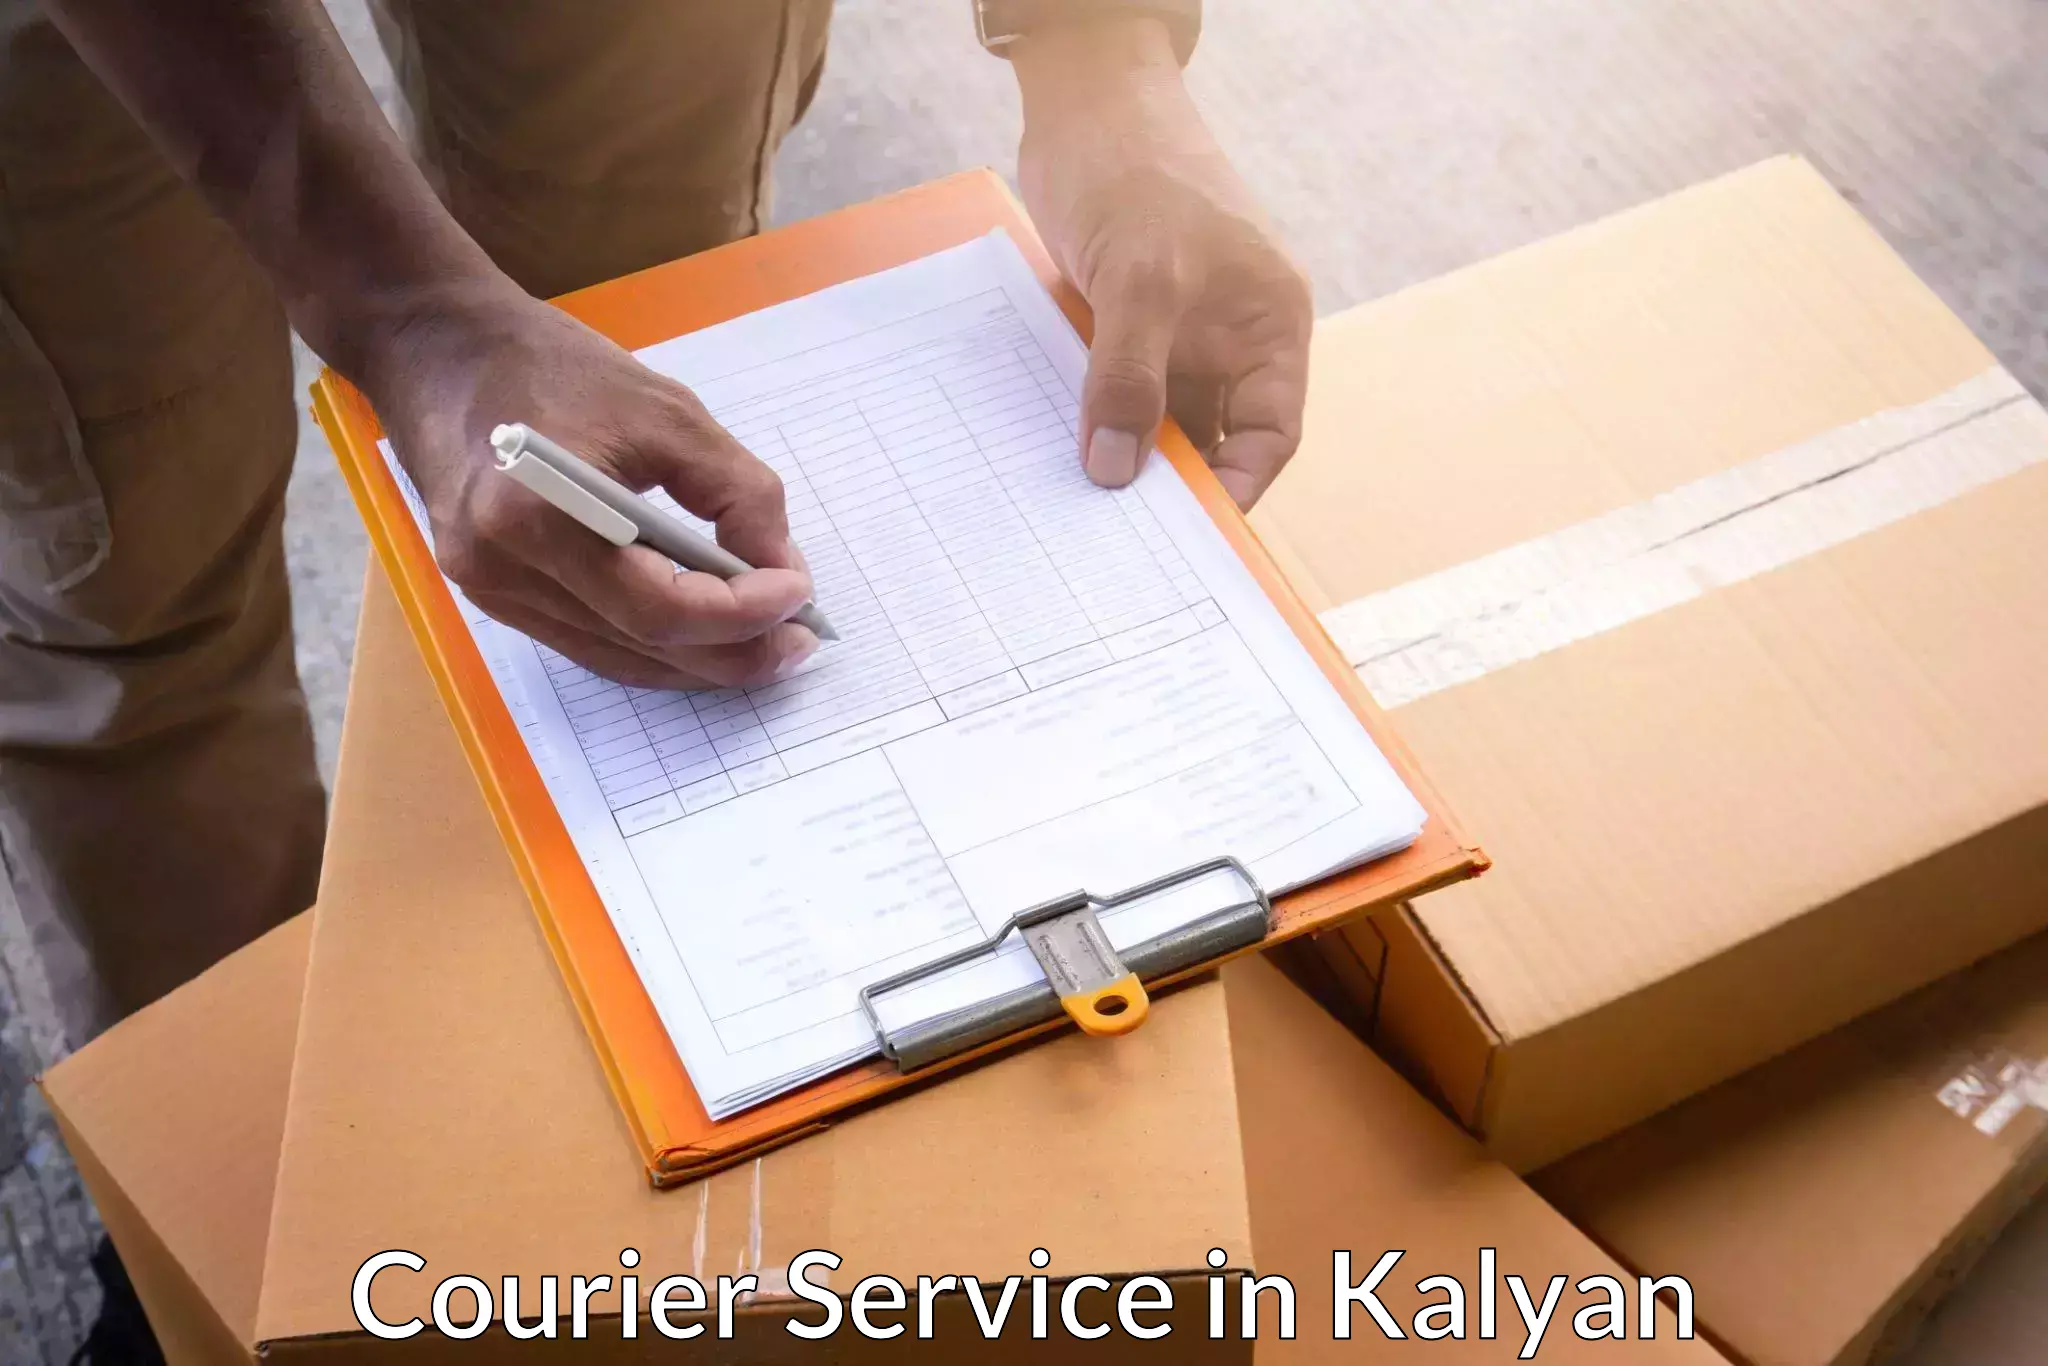 Seamless shipping service in Kalyan